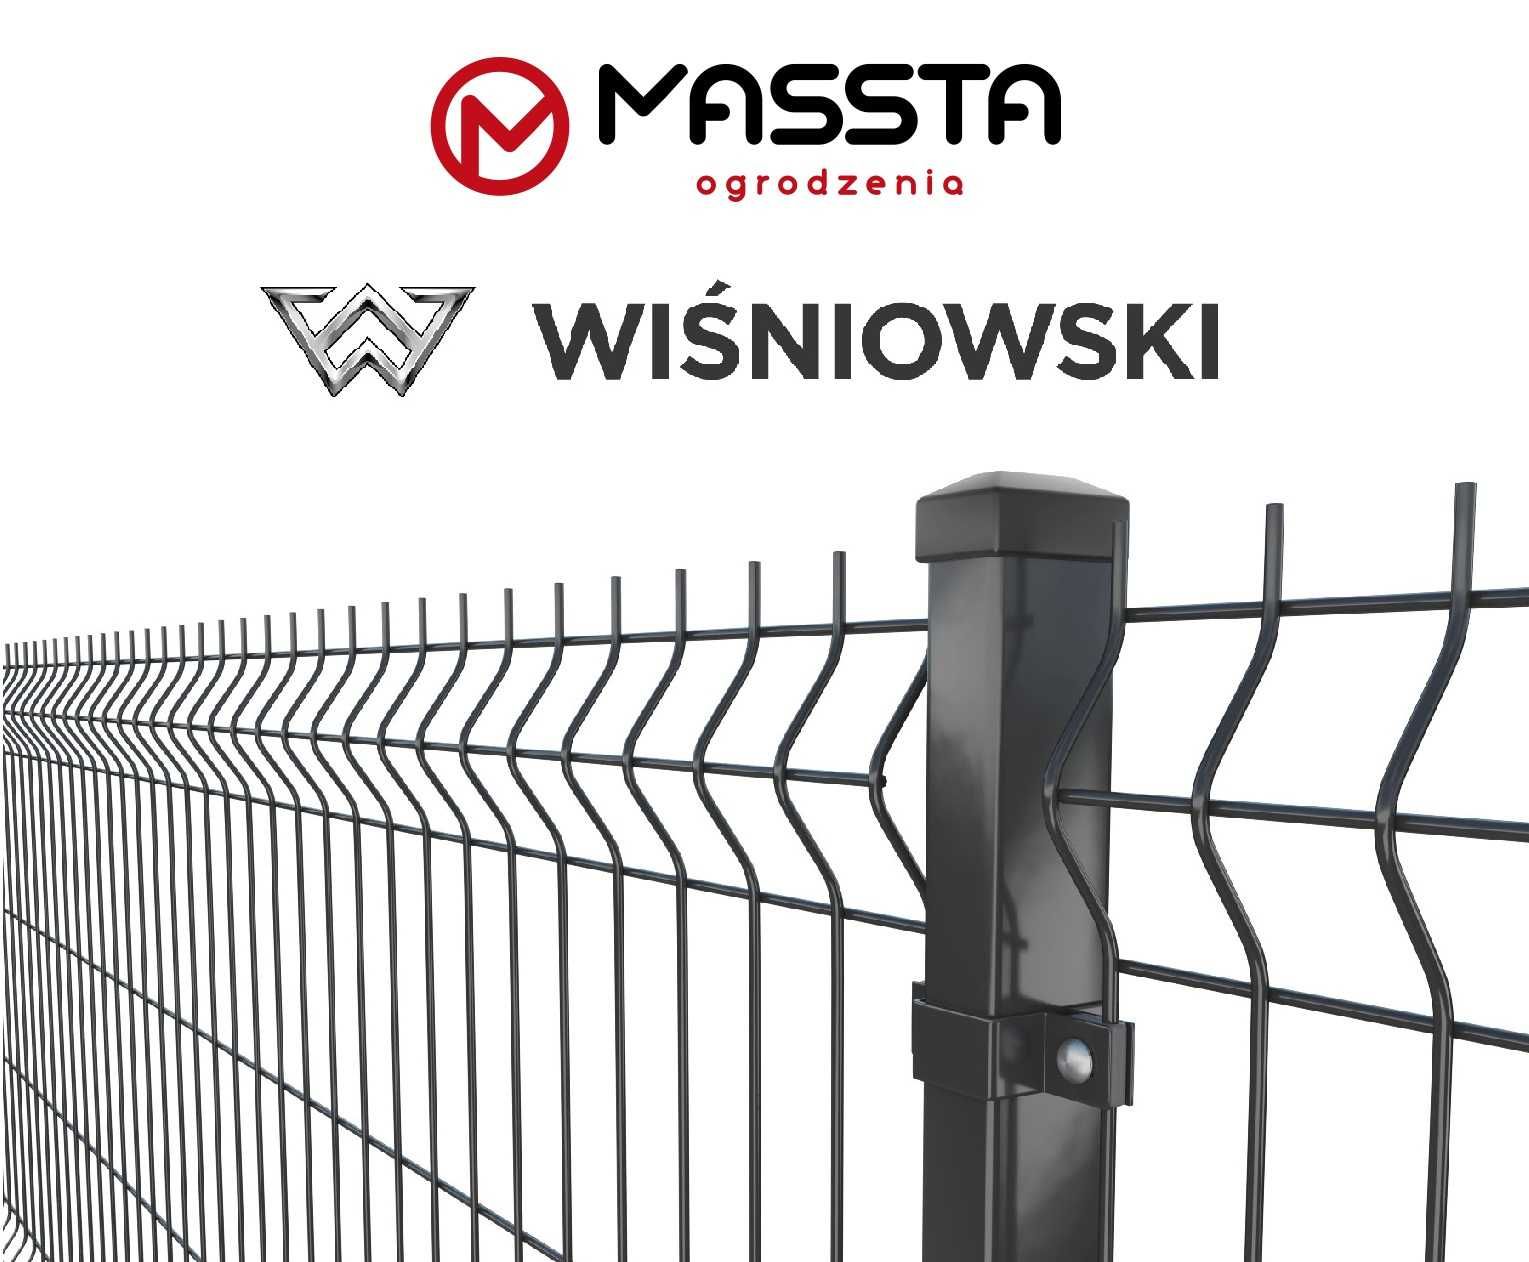 Panel ogrodzeniowy 3D - WIŚNIOWSKI - 1230x2500 mm - 4 mm - MASSTA